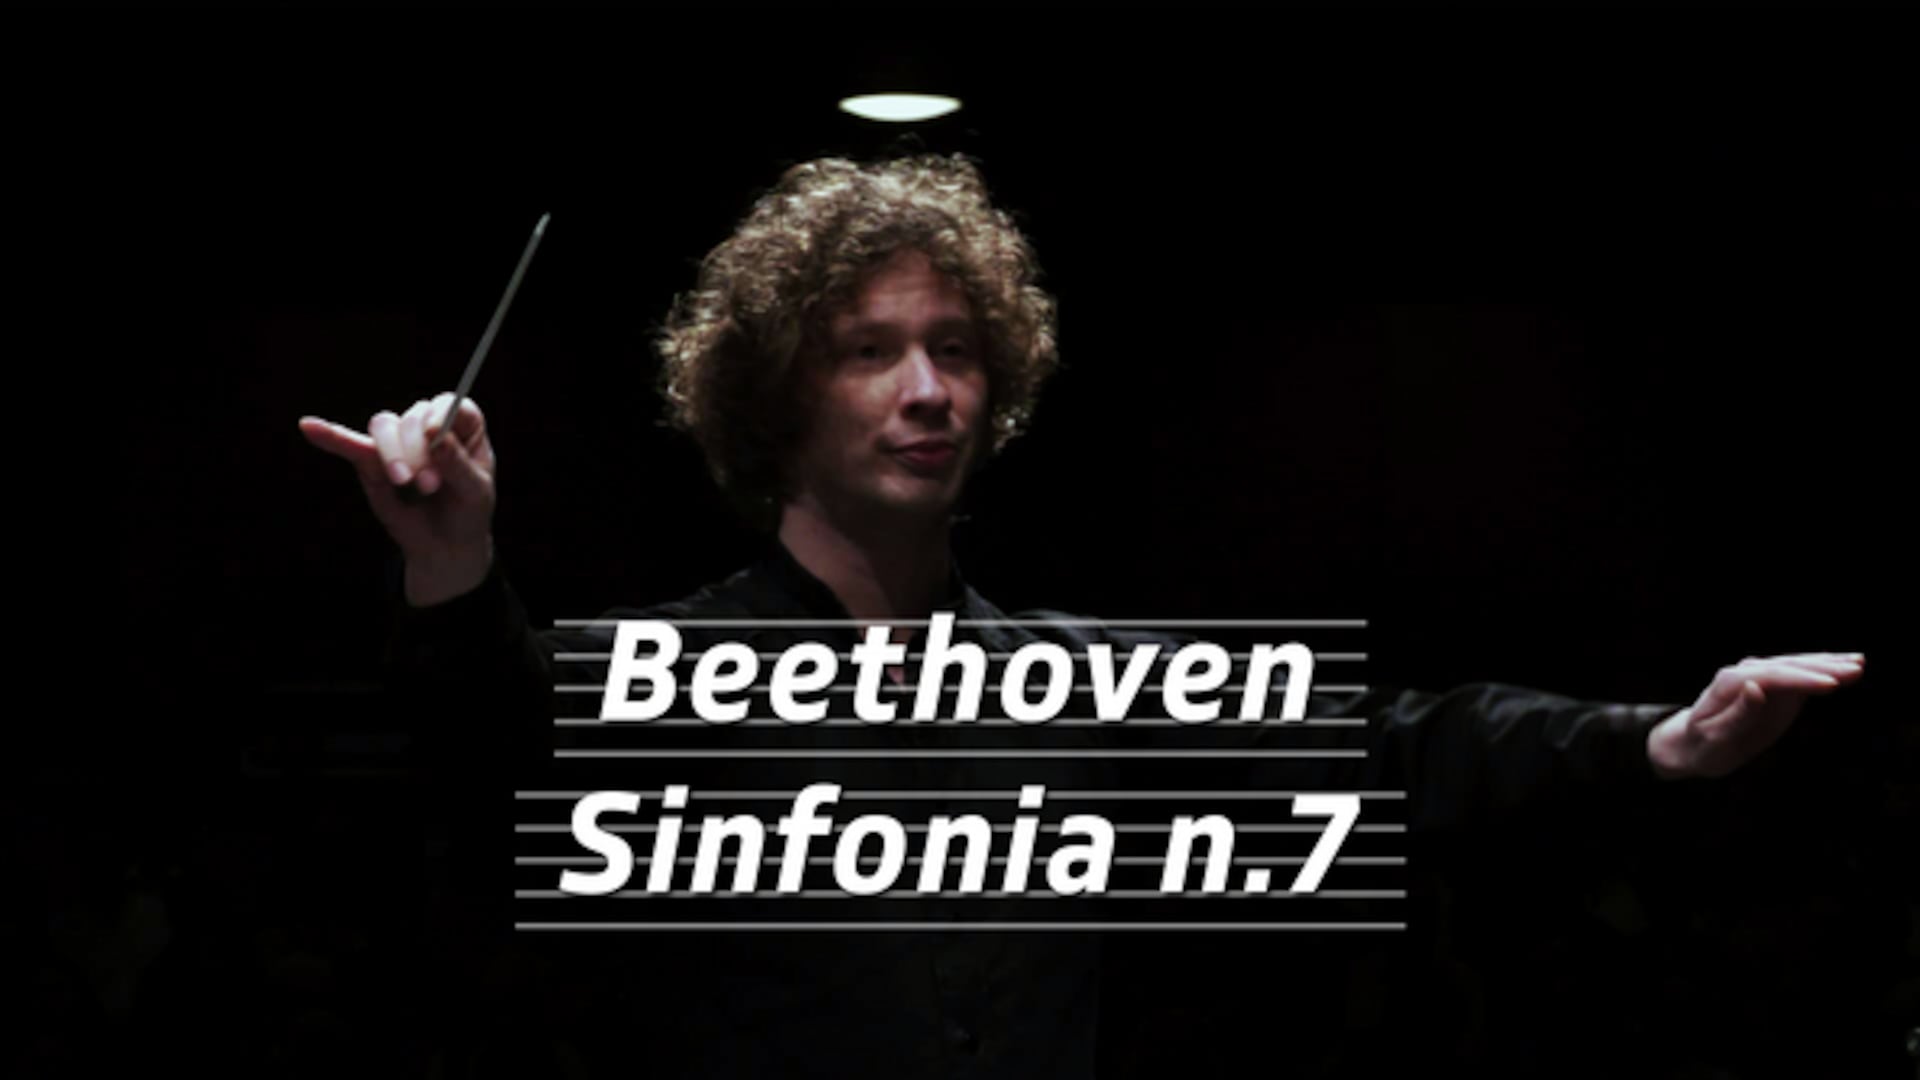 Beethoven - Sinfonia n.7